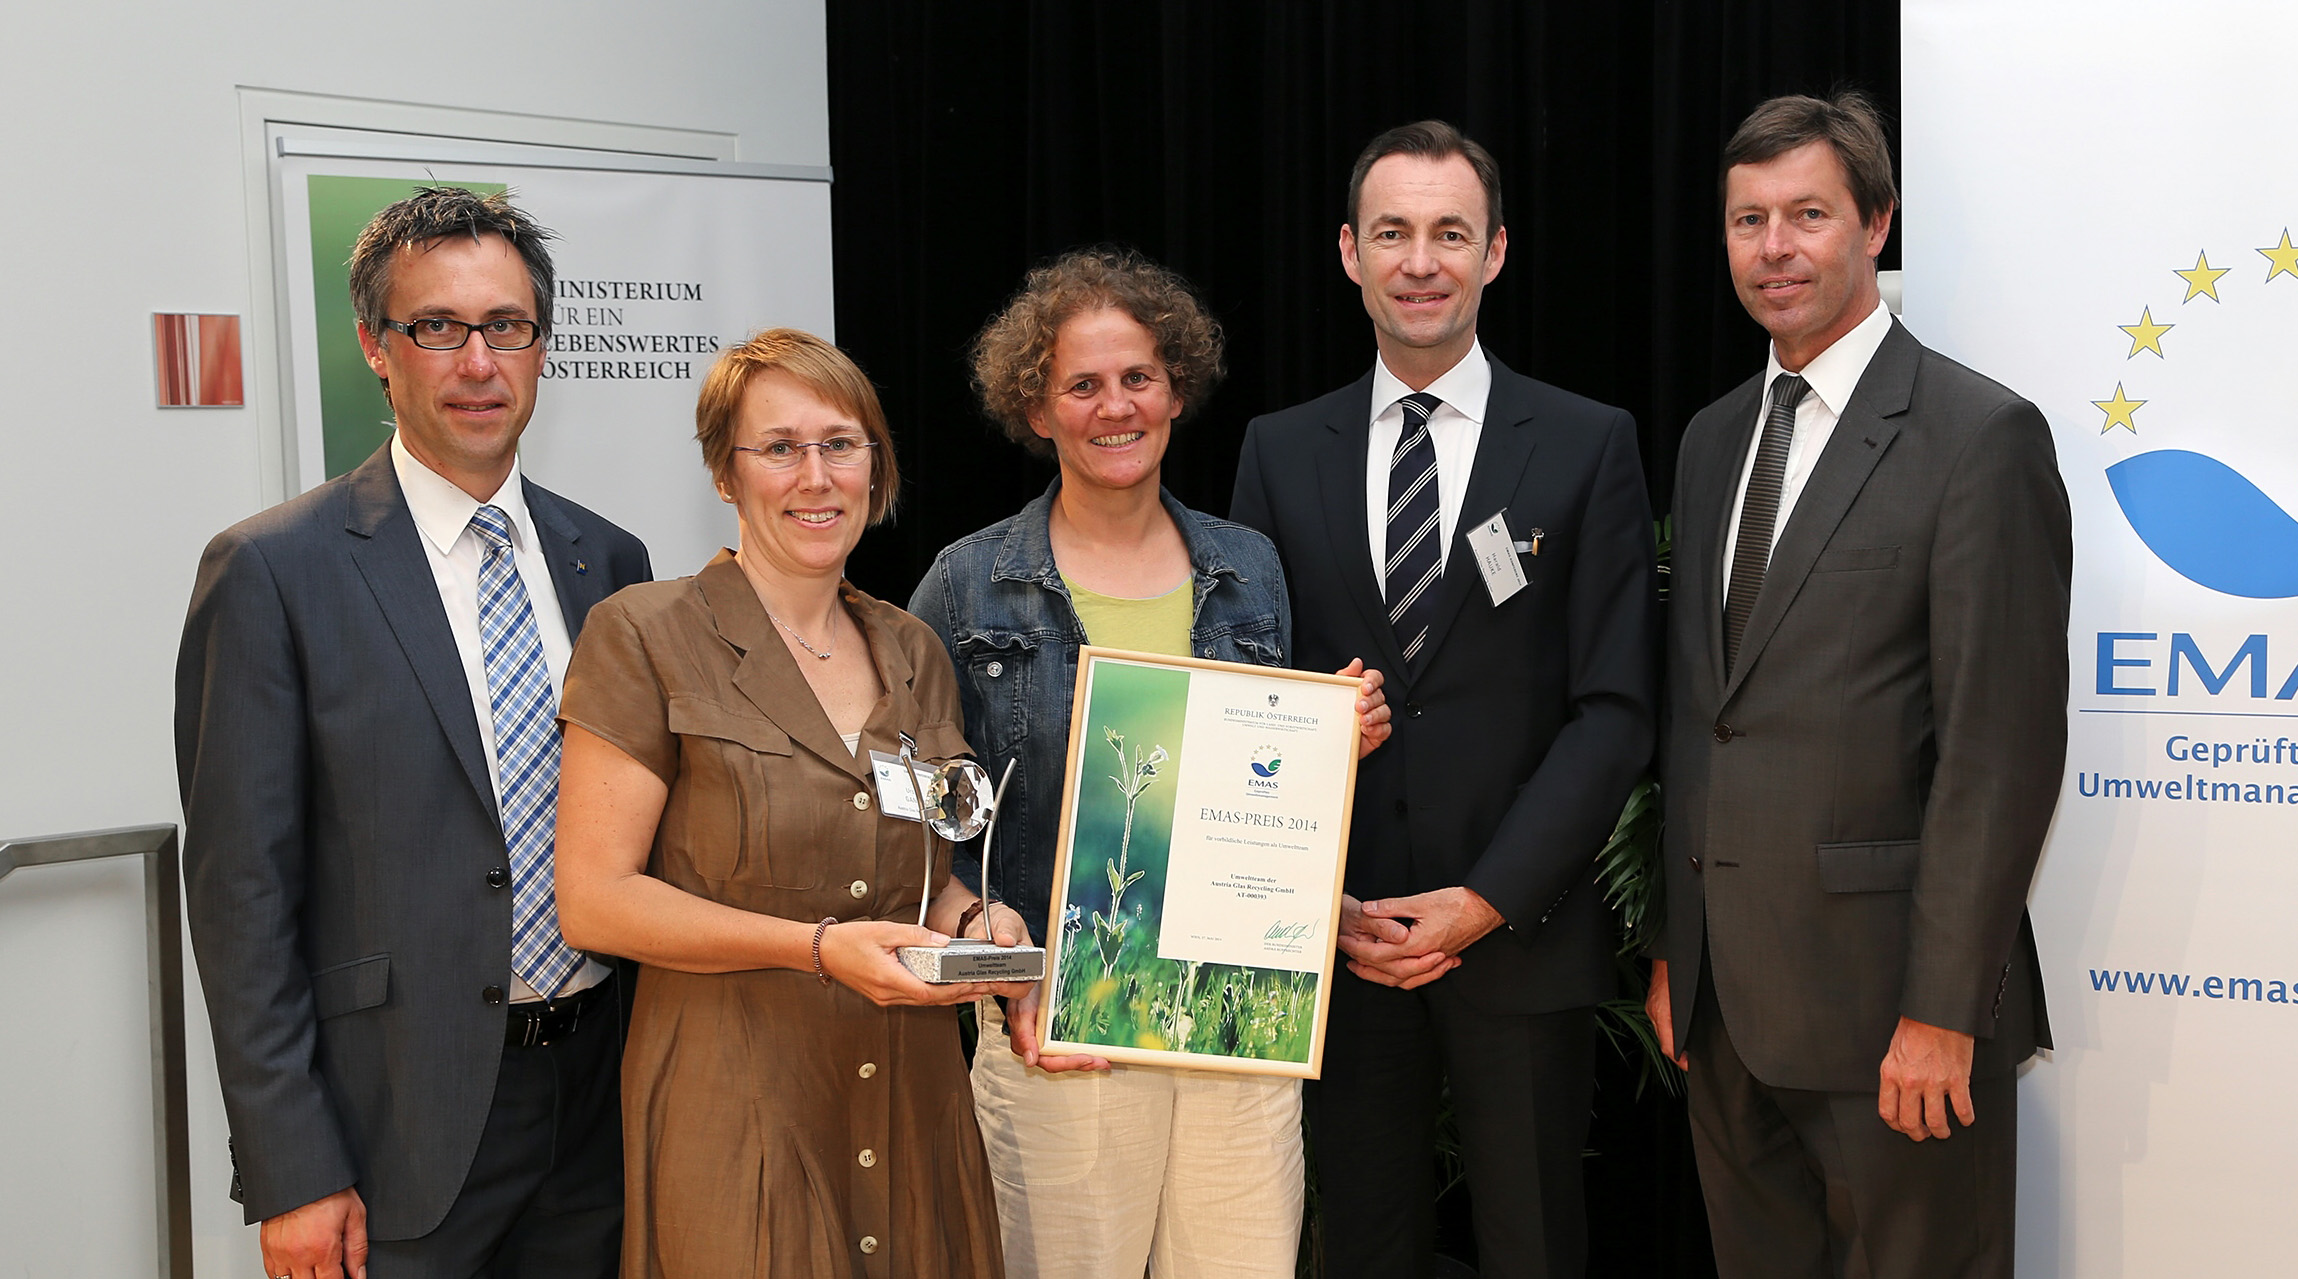 Golden Pixel 2013 in der Kategorie 'ökologisch & umweltfreundlich', v.l.n.r.: Lukas Zehndorfer, Monika Piber-Maslo, Michaela Helmreich; Foto: Reiterer